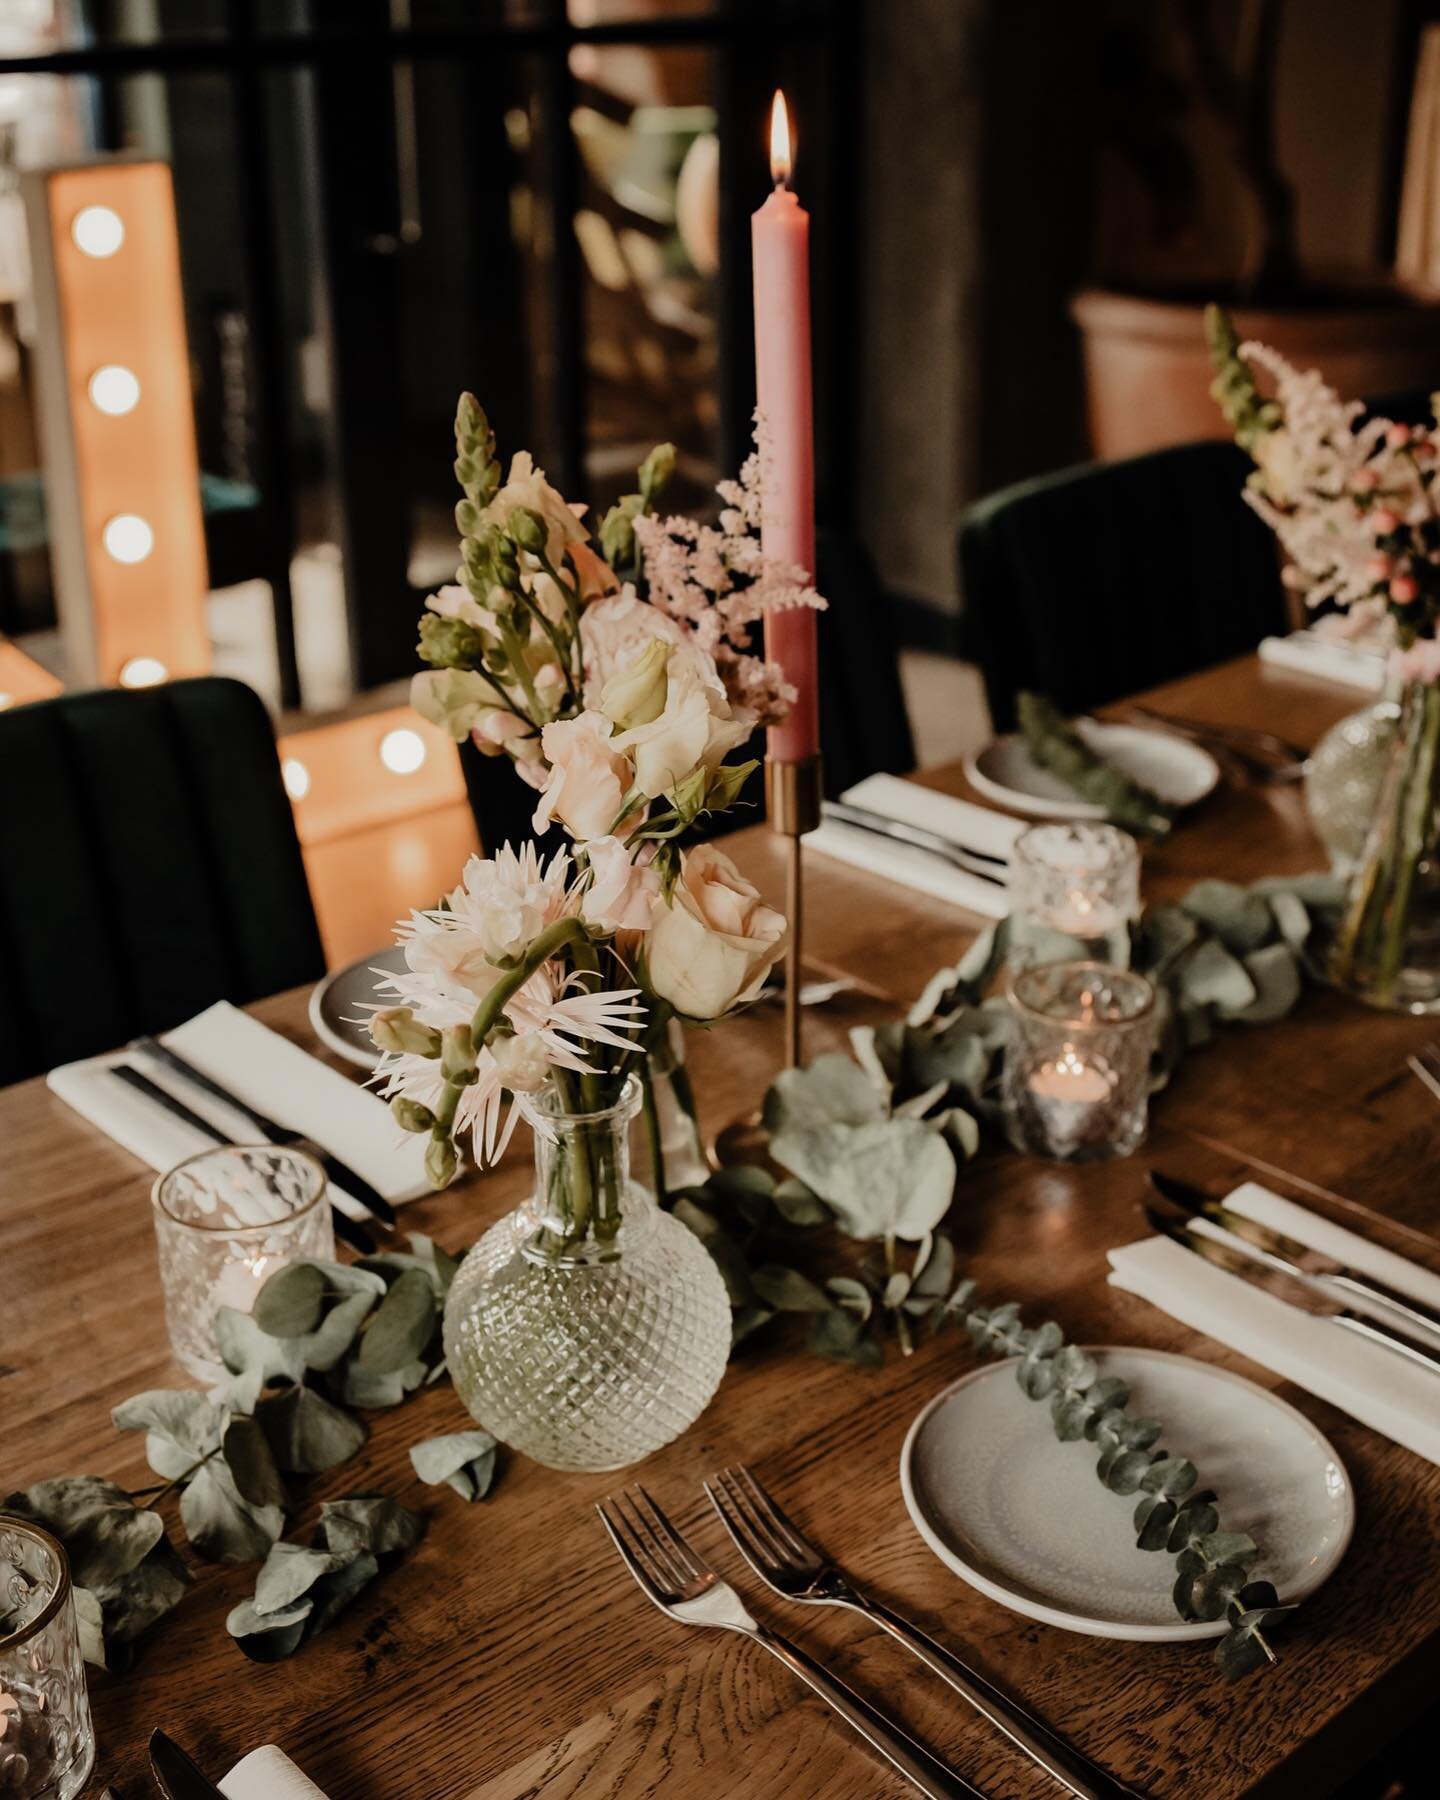 Van die prachtig ingedekte tafels, ik vind het altijd zo tof! 
Iemand die toevallig zin heeft om met kerst mijn tafel thuis zo te komen stylen? #youneverknow 

#lensbweddings 

#weddingphotography  #theysaidyes #weddingphotographer #bruidsfotografie 